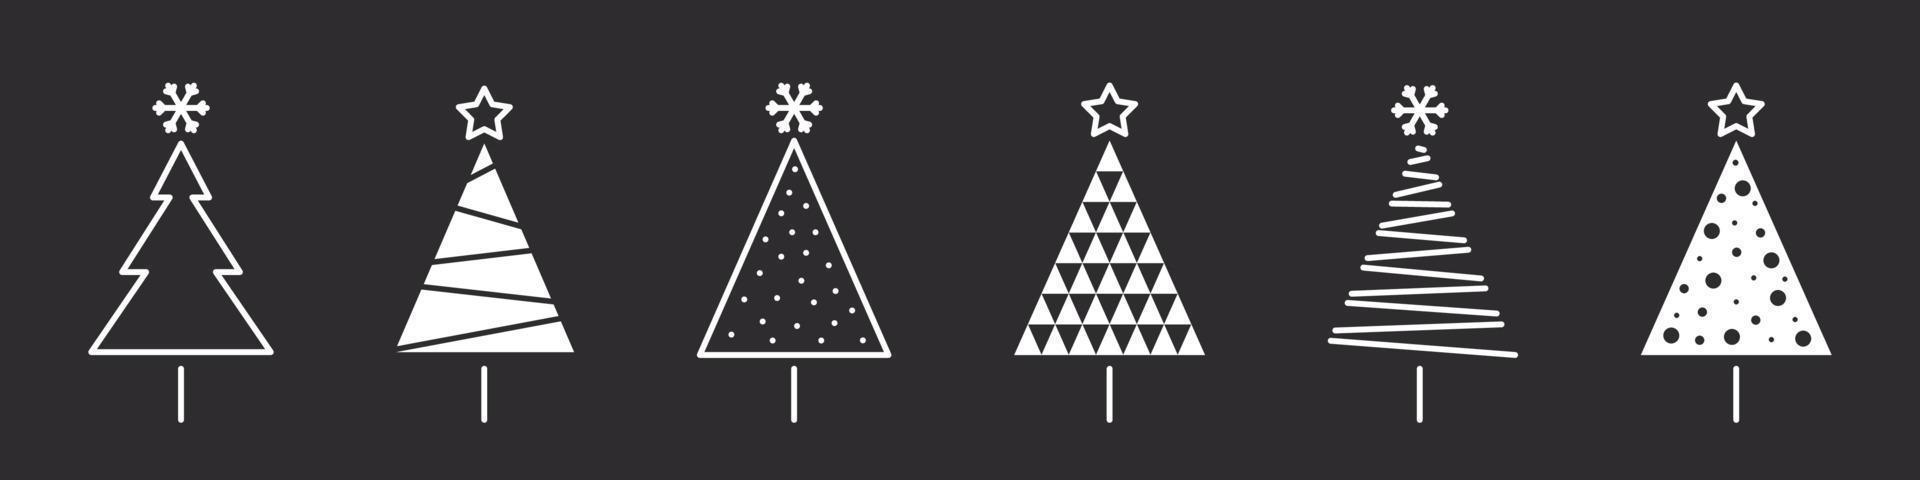 Kerstmis bomen. modern Kerstmis pictogrammen. Kerstmis tekens. verzameling van conceptuele Kerstmis boom. vector illustratie